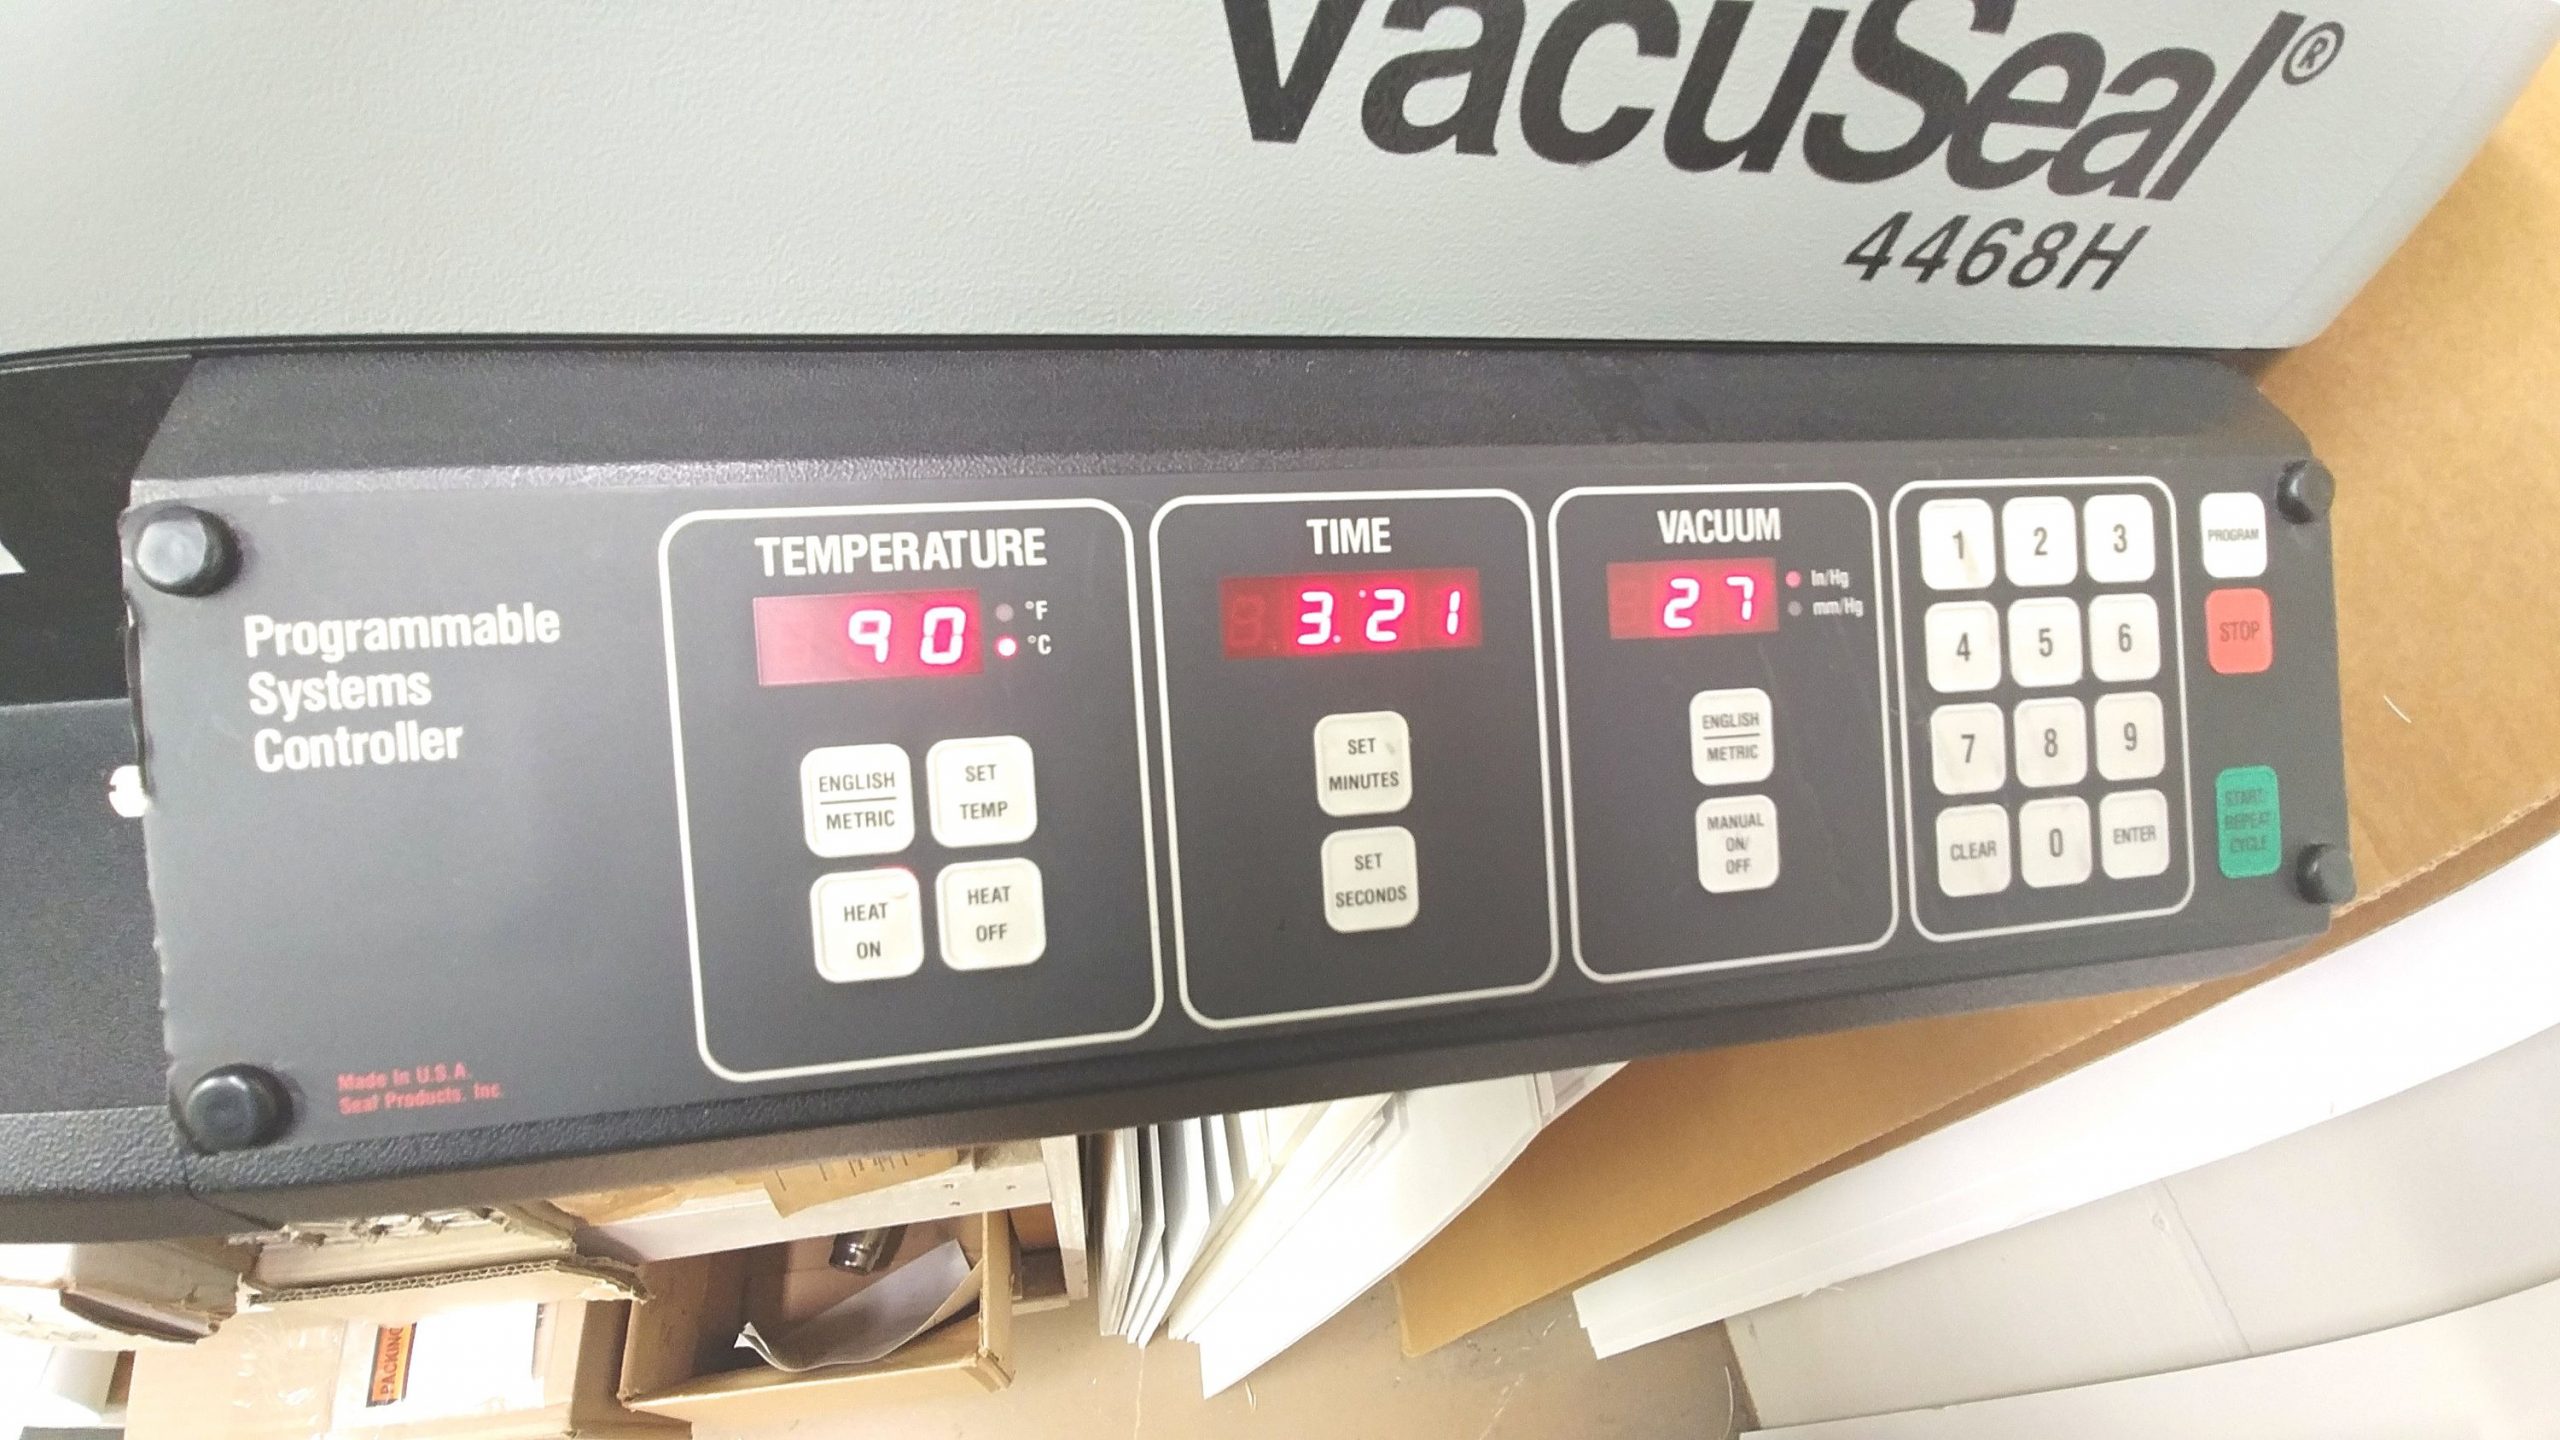 Vacuseal Bienfang 4468H Vacuum Dry Mount Press